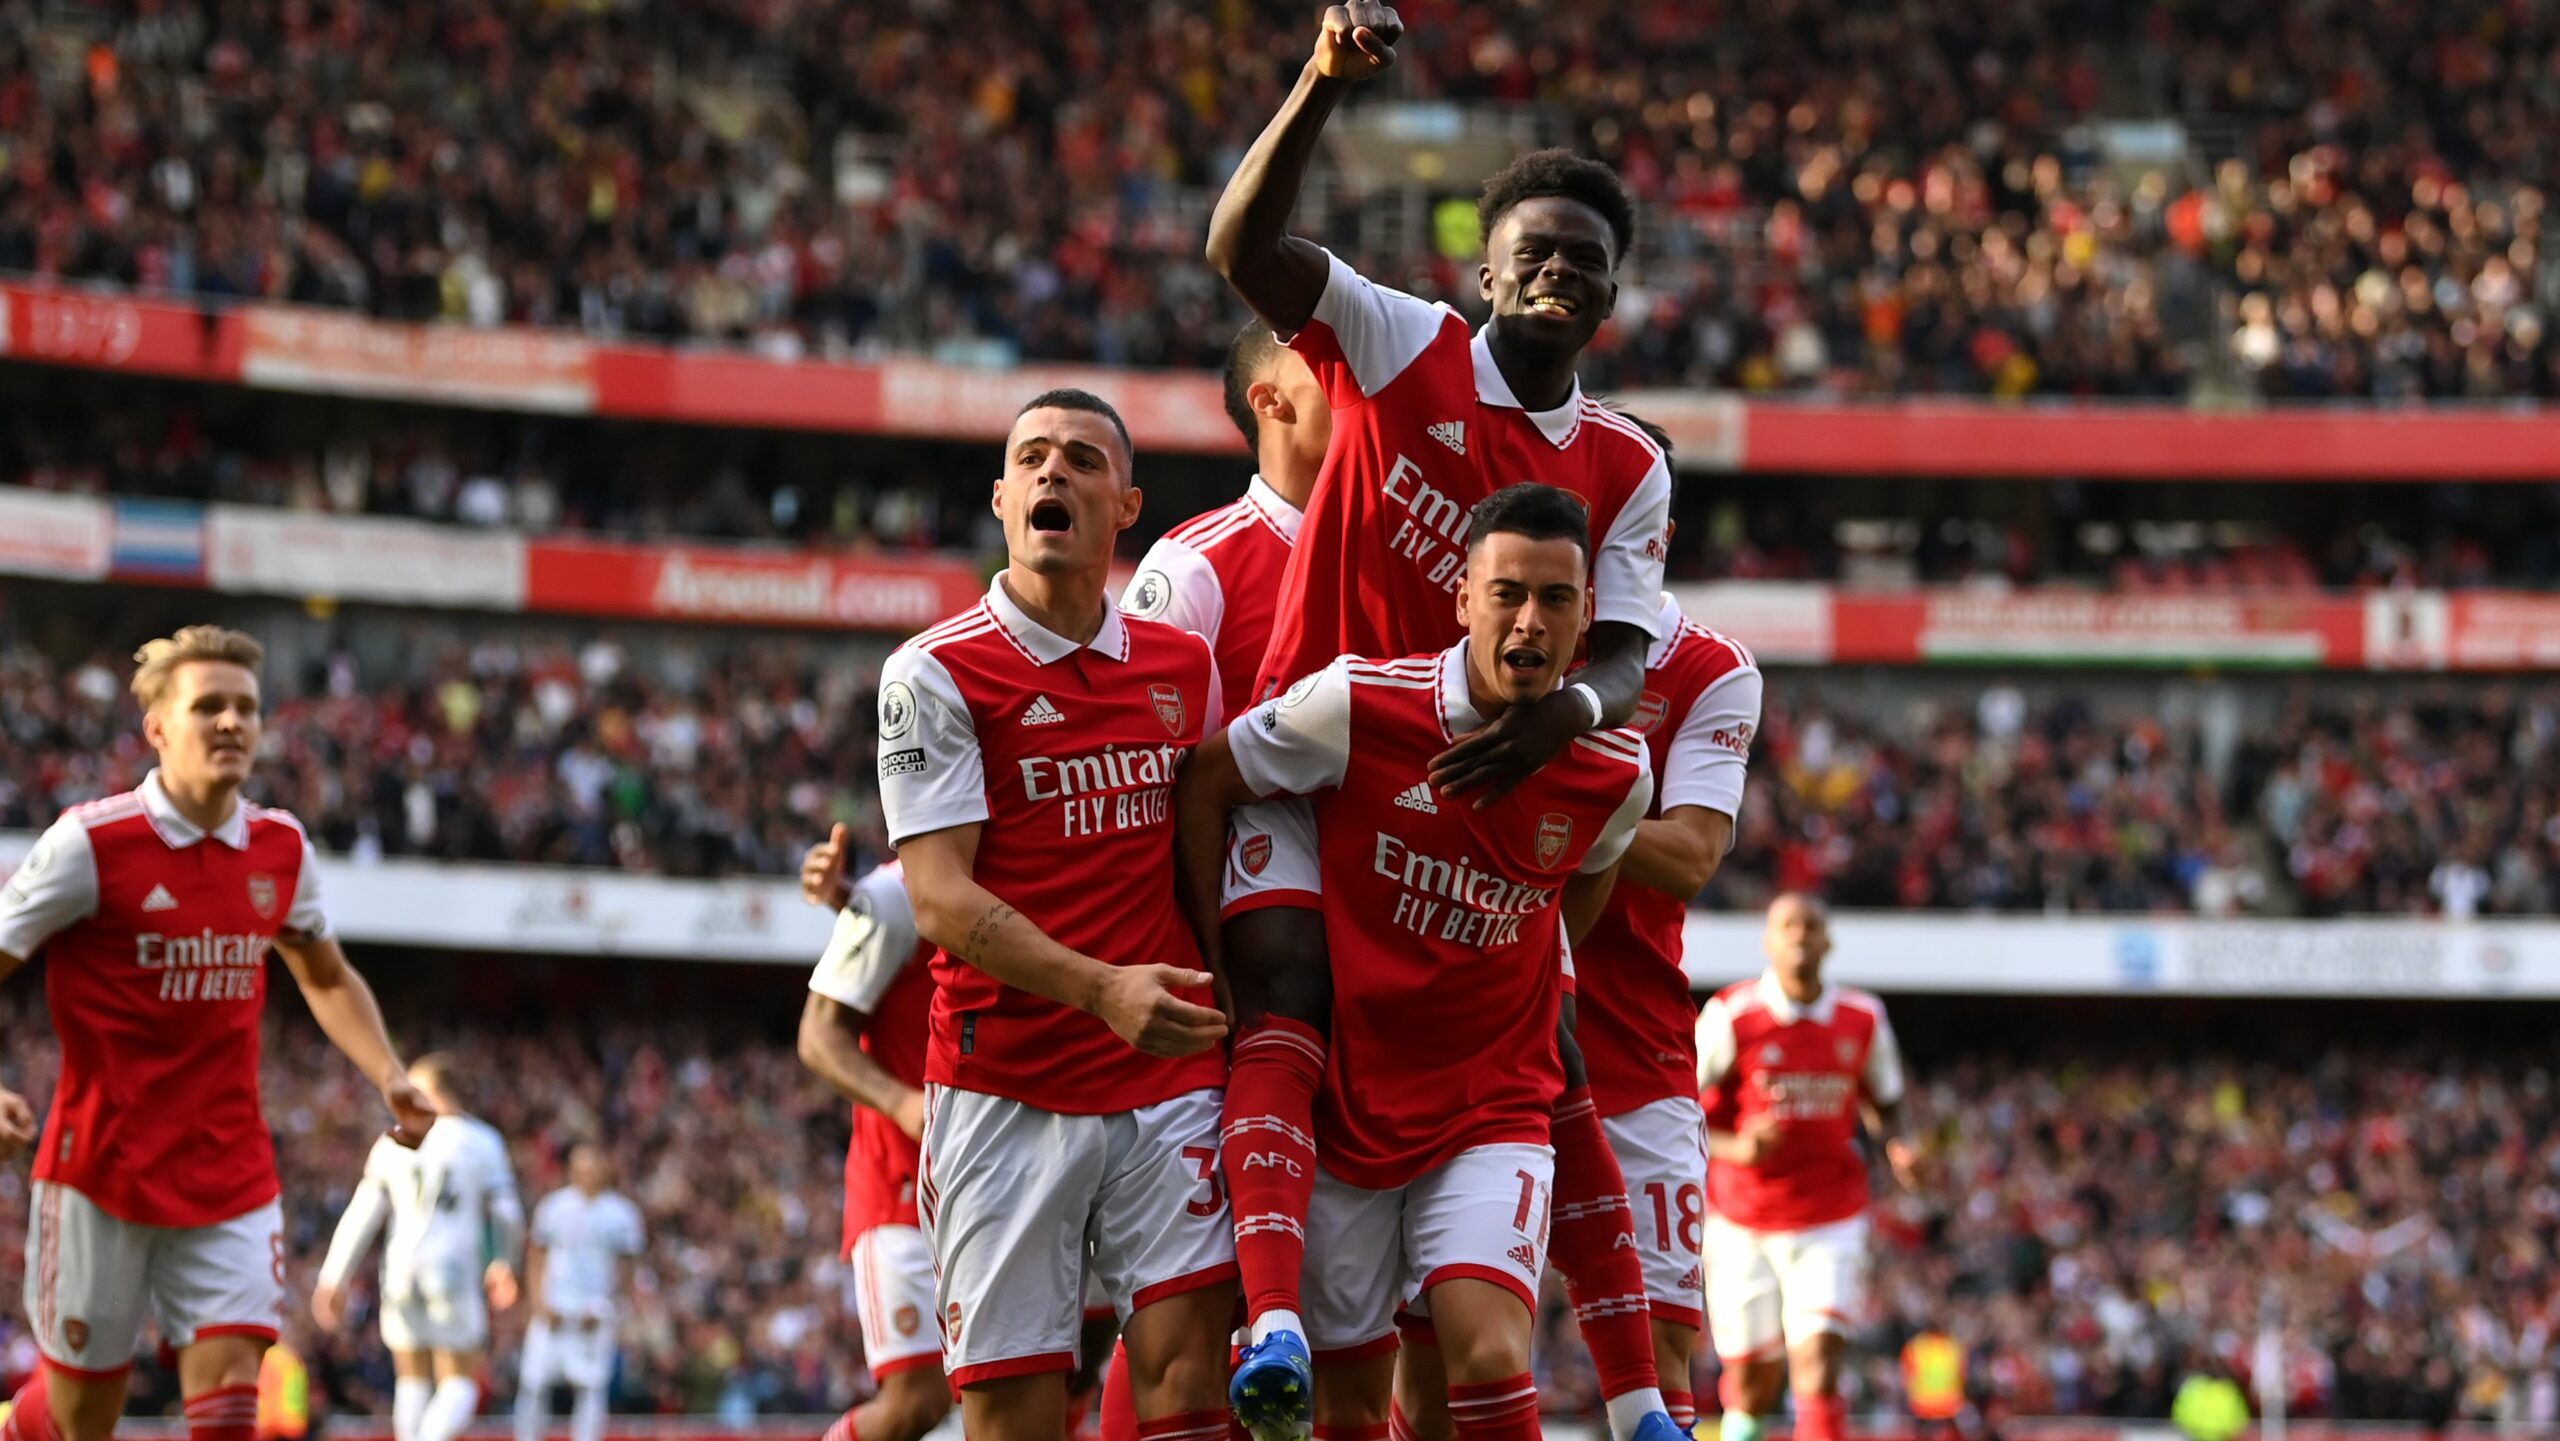 Partey aligné en défense, les compositions officielles du choc Arsenal – Nottingham Forest